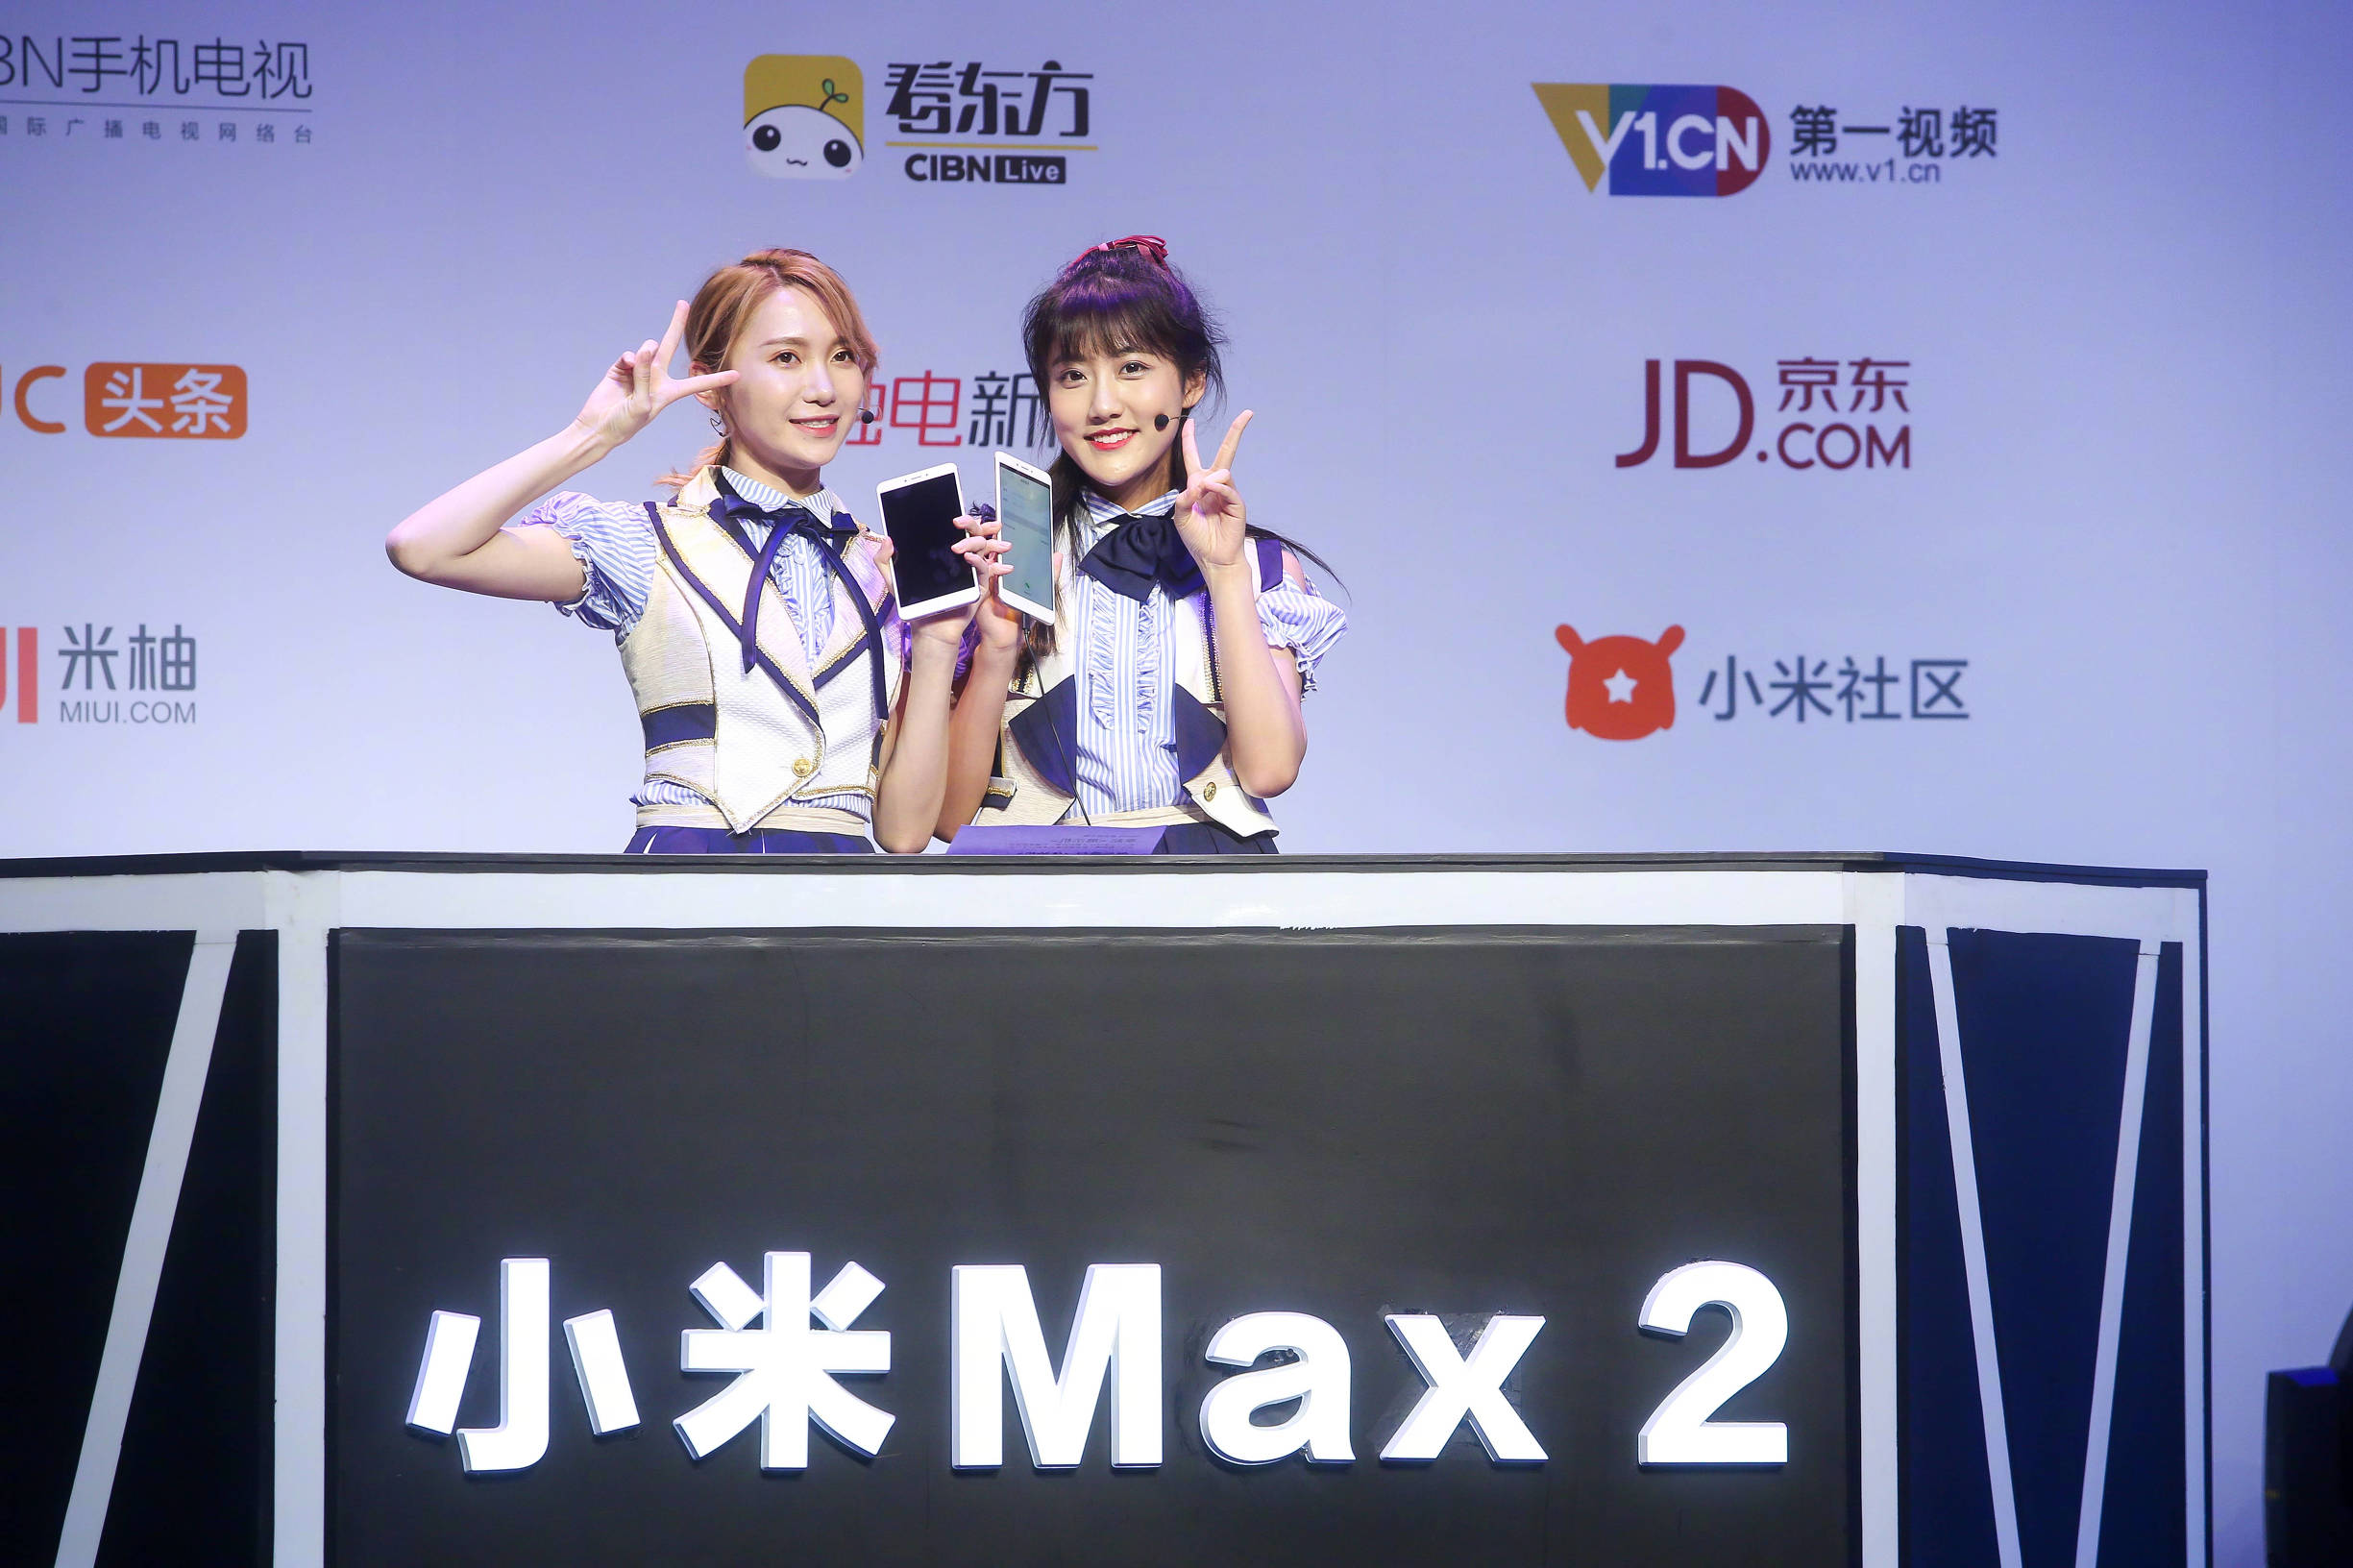 大屏幕发烧友的褔利：小米手机max2是最非常值得一款商品，感受很优异